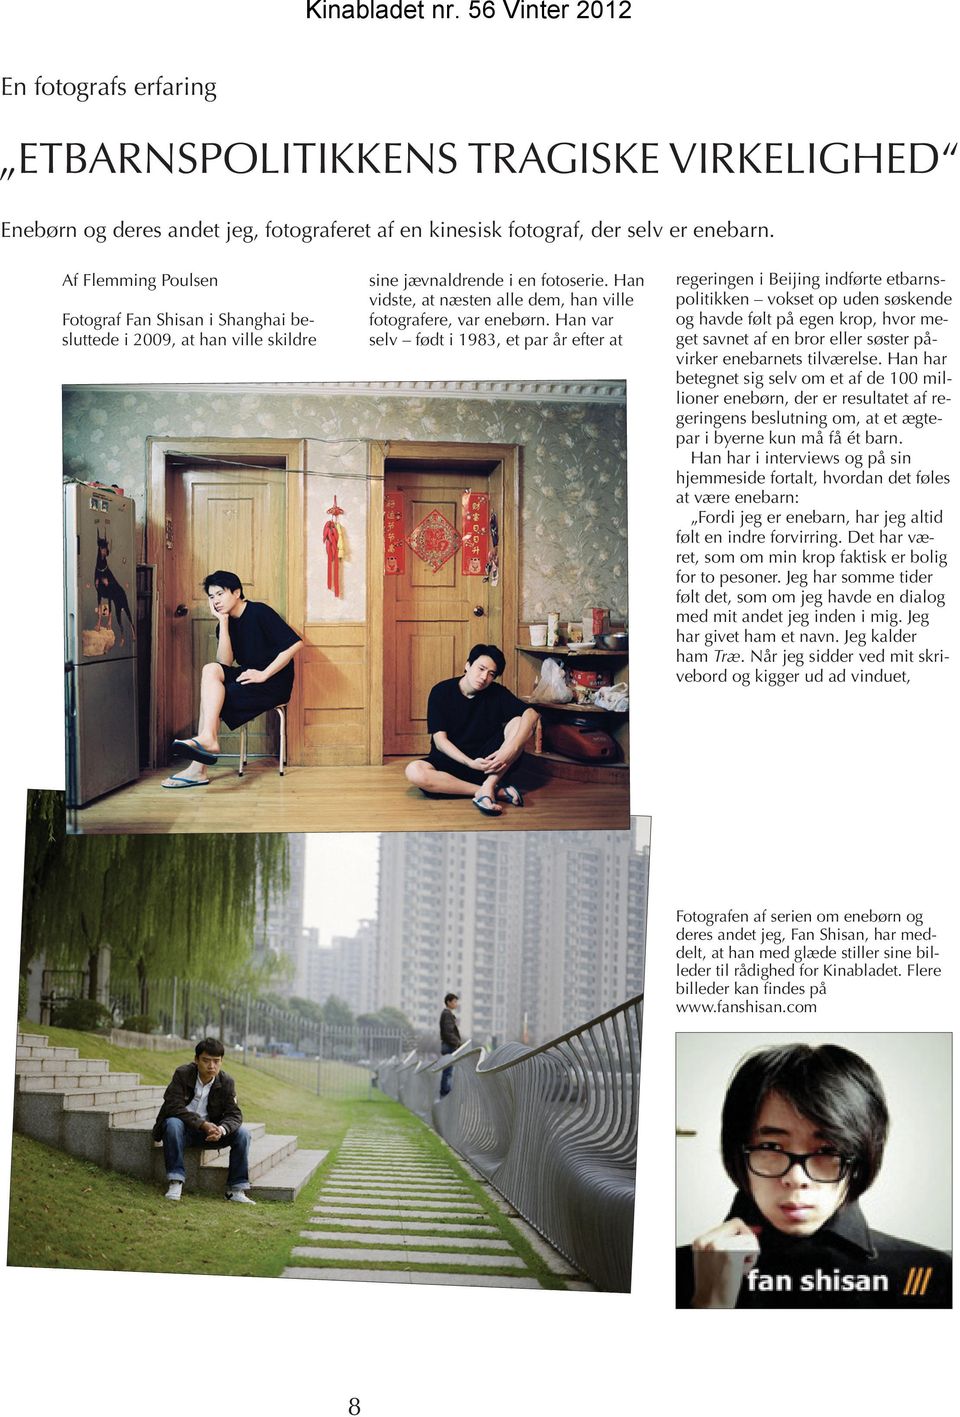 Han var selv født i 1983, et par år efter at Fotograf Fan Shisan i Shanghai besluttede i 2009, at han ville skildre regeringen i Beijing indførte etbarnspolitikken vokset op uden søskende og havde